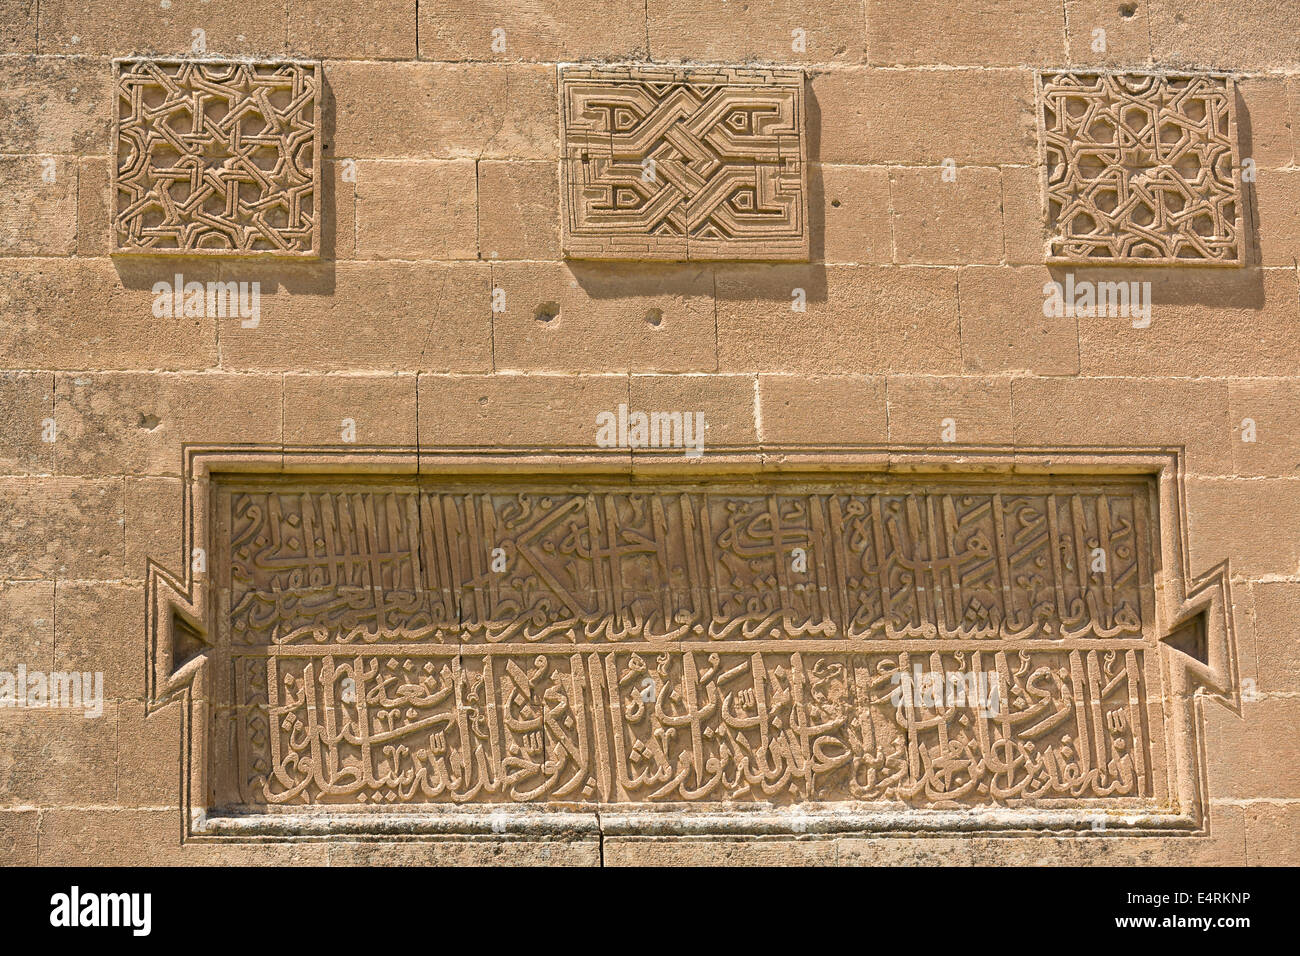 Basis des Minaretts der Sultan Soleyman Moschee, Hasankeyf, Anatolien, Türkei. Stockfoto